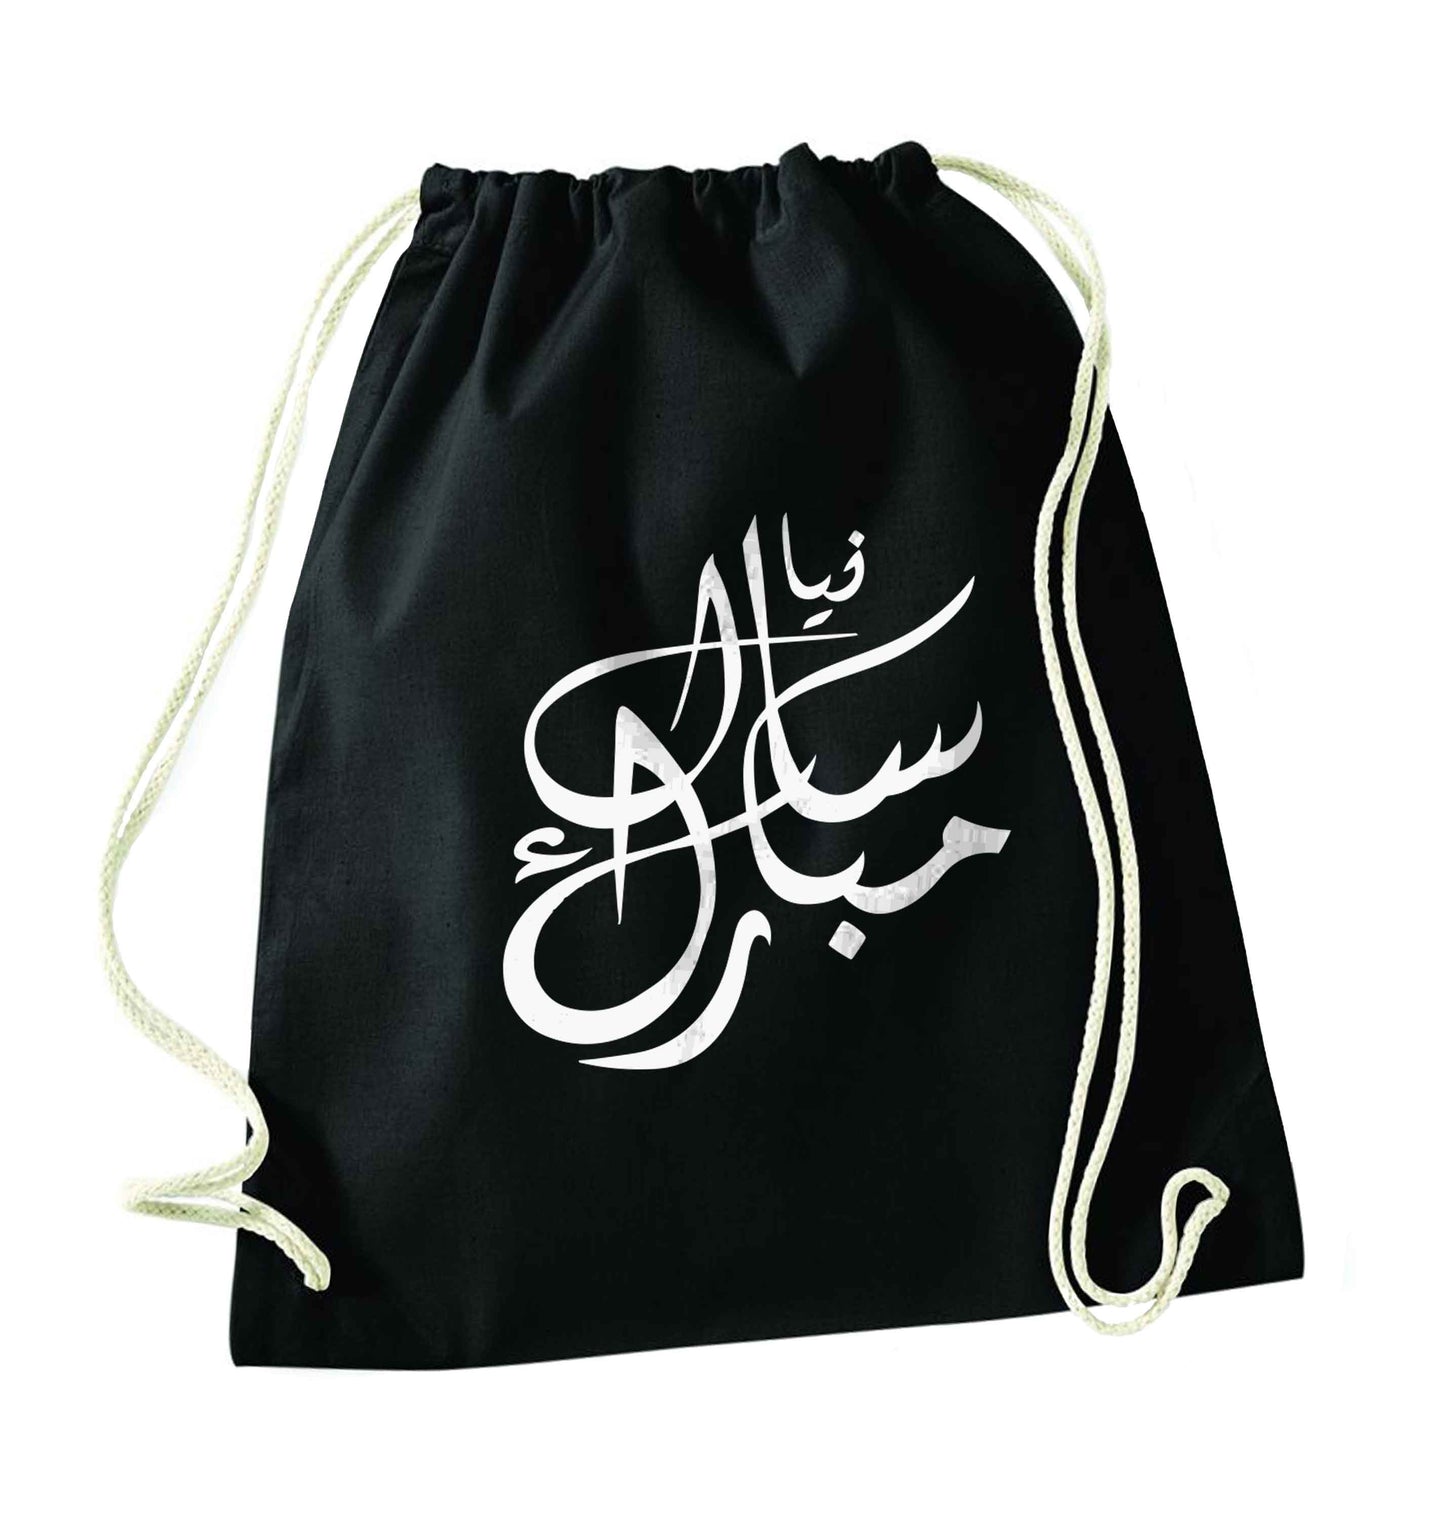 Urdu Naya saal mubarak black drawstring bag